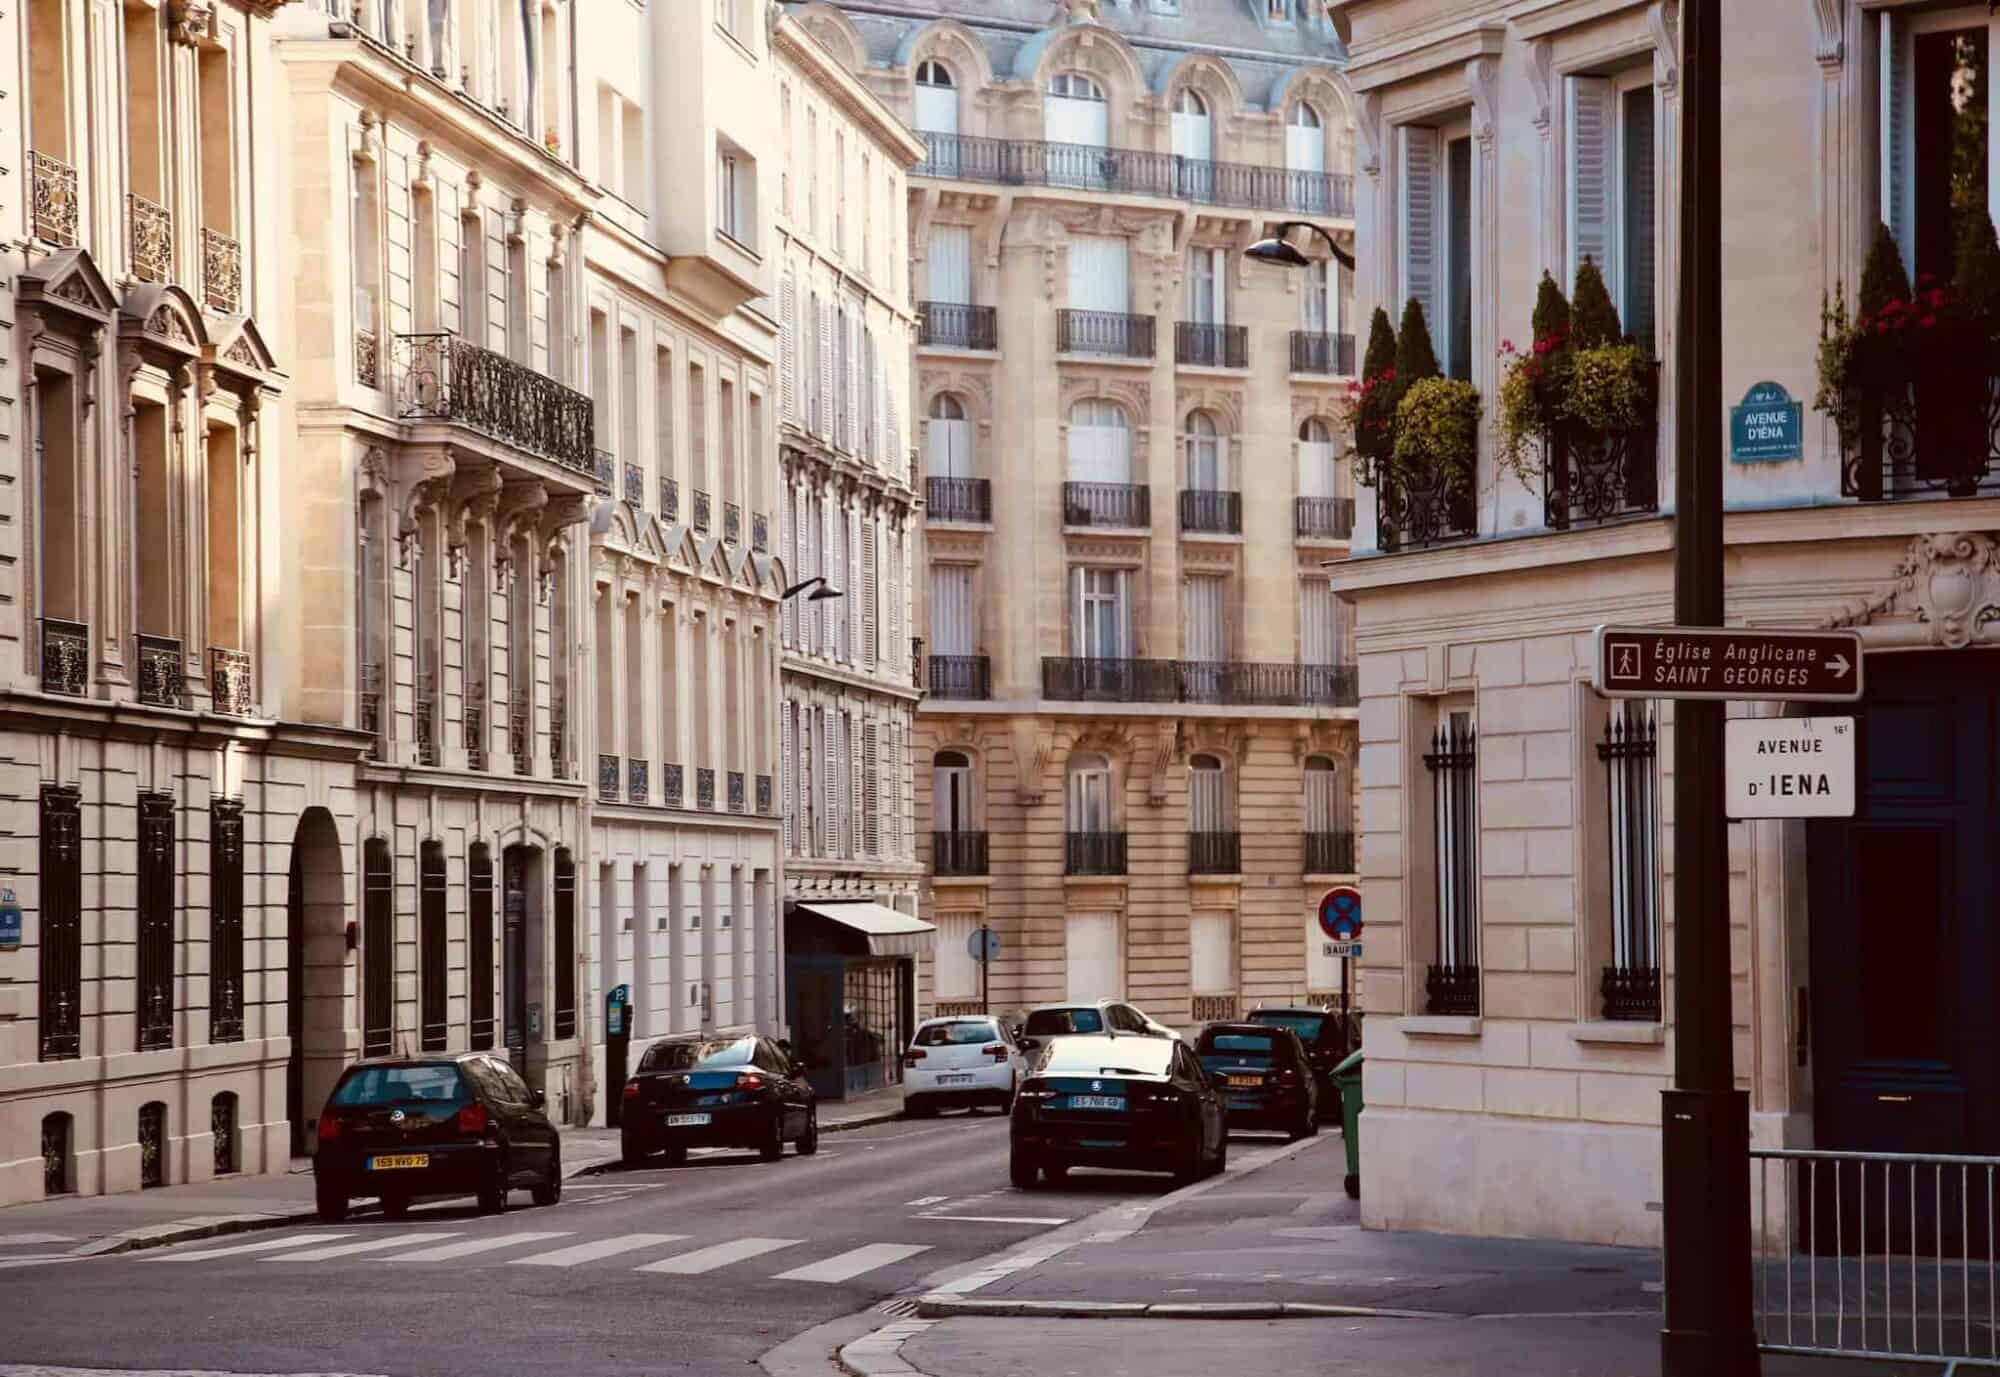 The cross street of beautiful exterior Haussmann buildings.